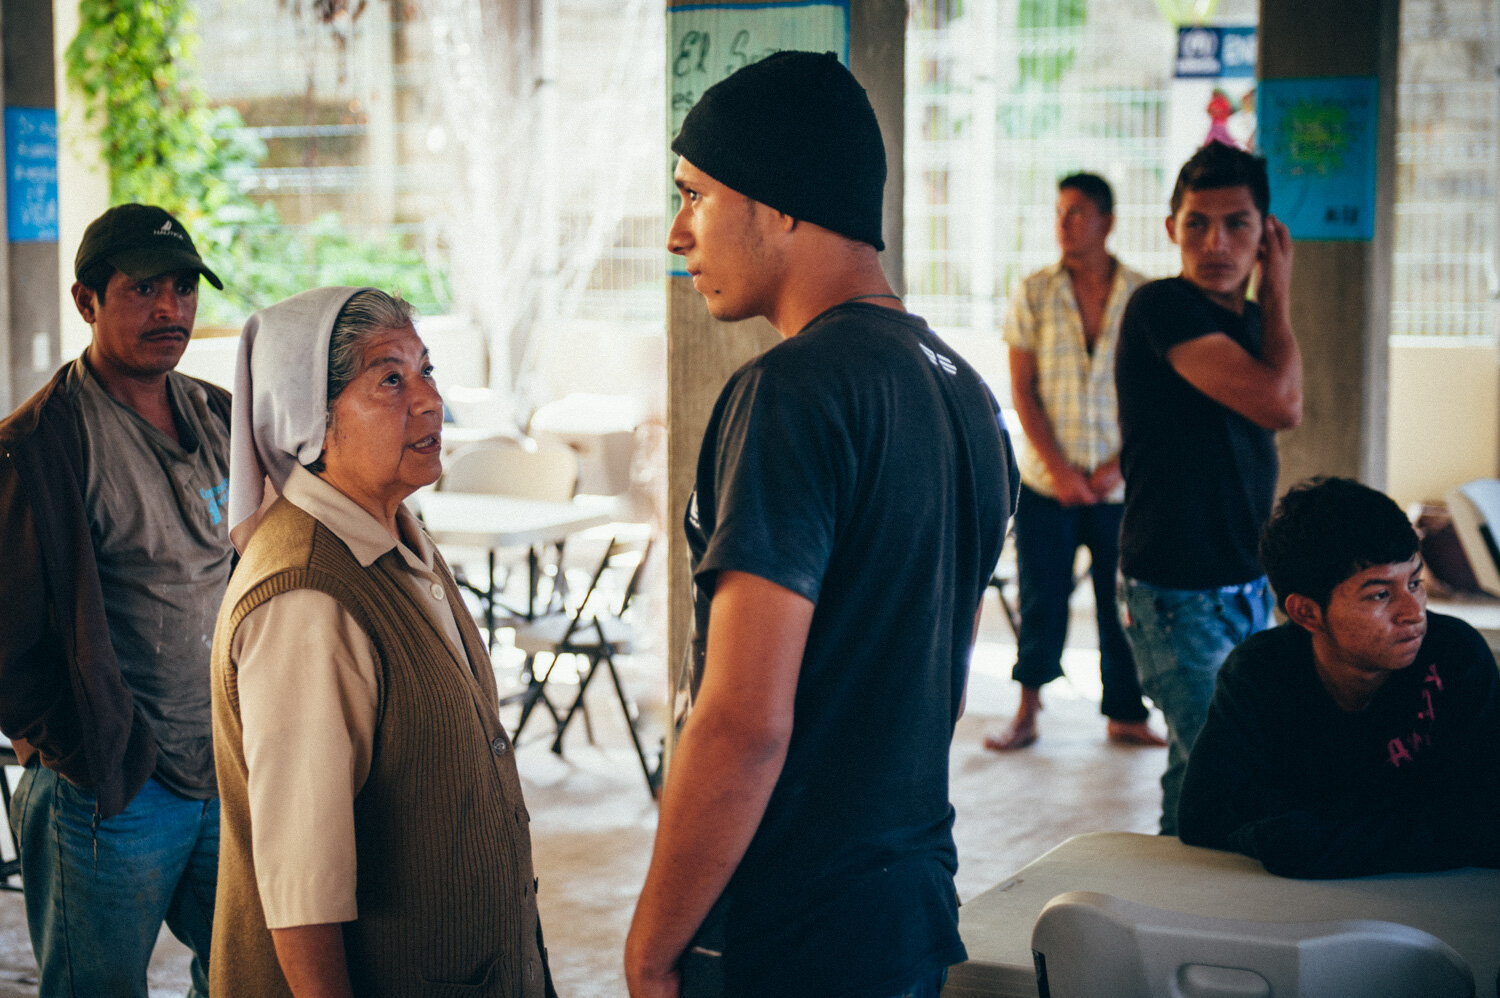  Des migrants épuisés sont accueilis par Soeur Nelly Rios dans la maison de migrants de Palenque qui accueille pour 3 jours maximum. Repas, douche, soins médicaux et information sur les droits, les routes migratoires, et les risques à éviter. Palenqu